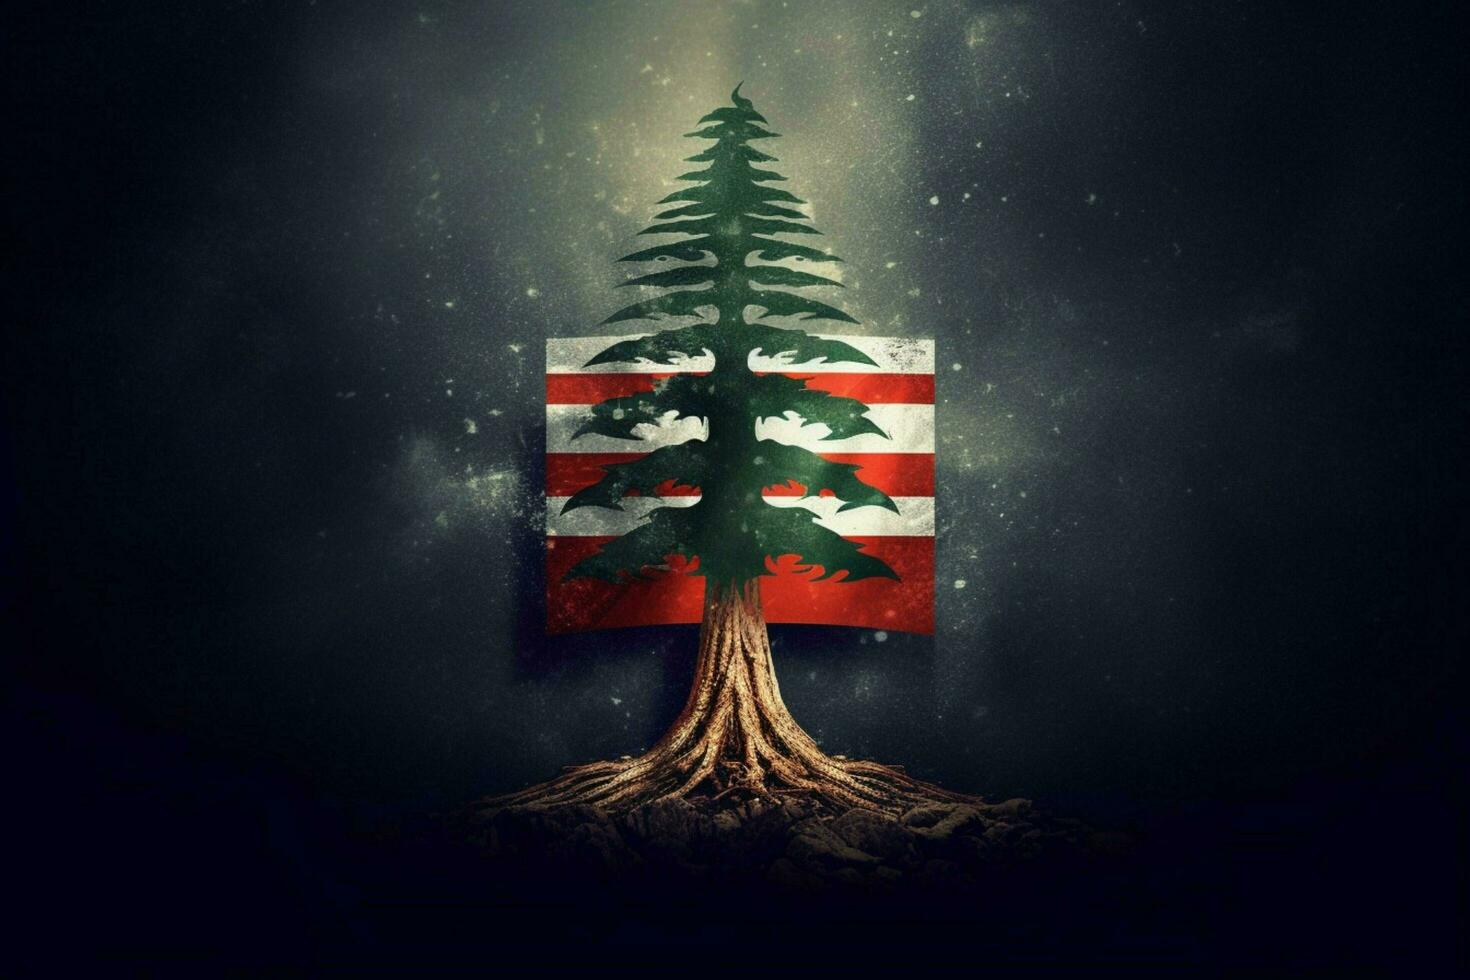 flag wallpaper of Lebanon photo